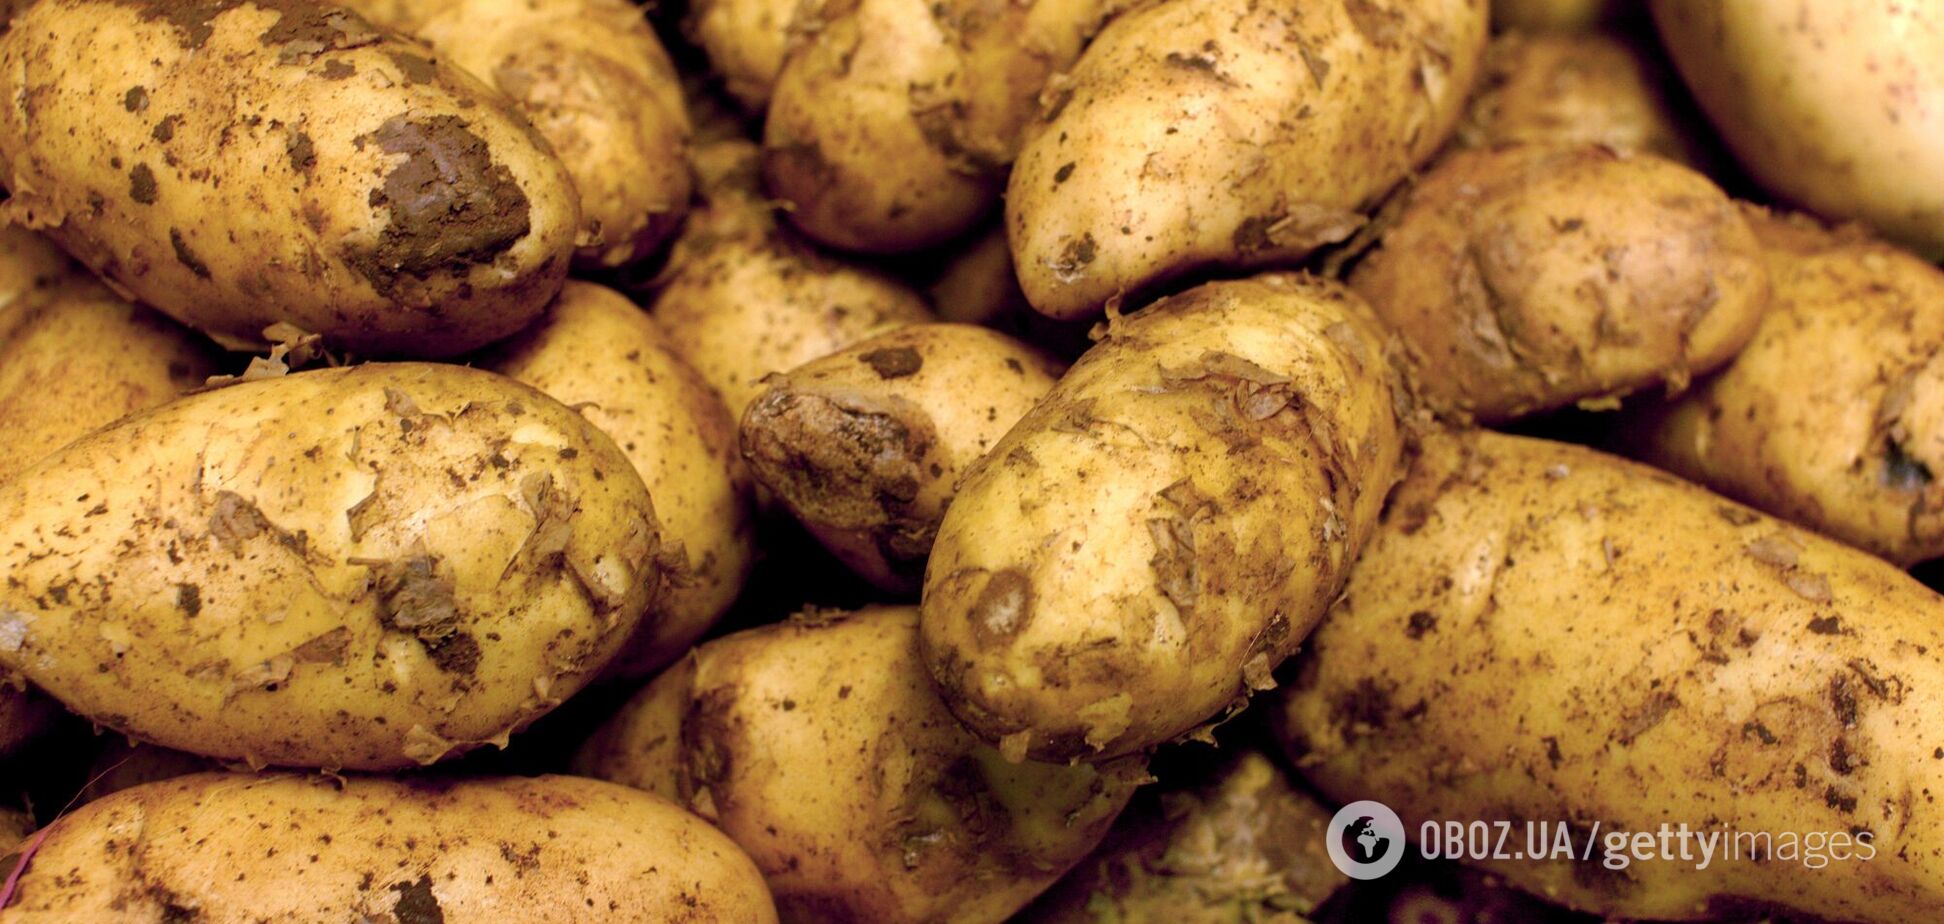 Українців попередили про дефіцит картоплі: у продаж йде навіть неліквід